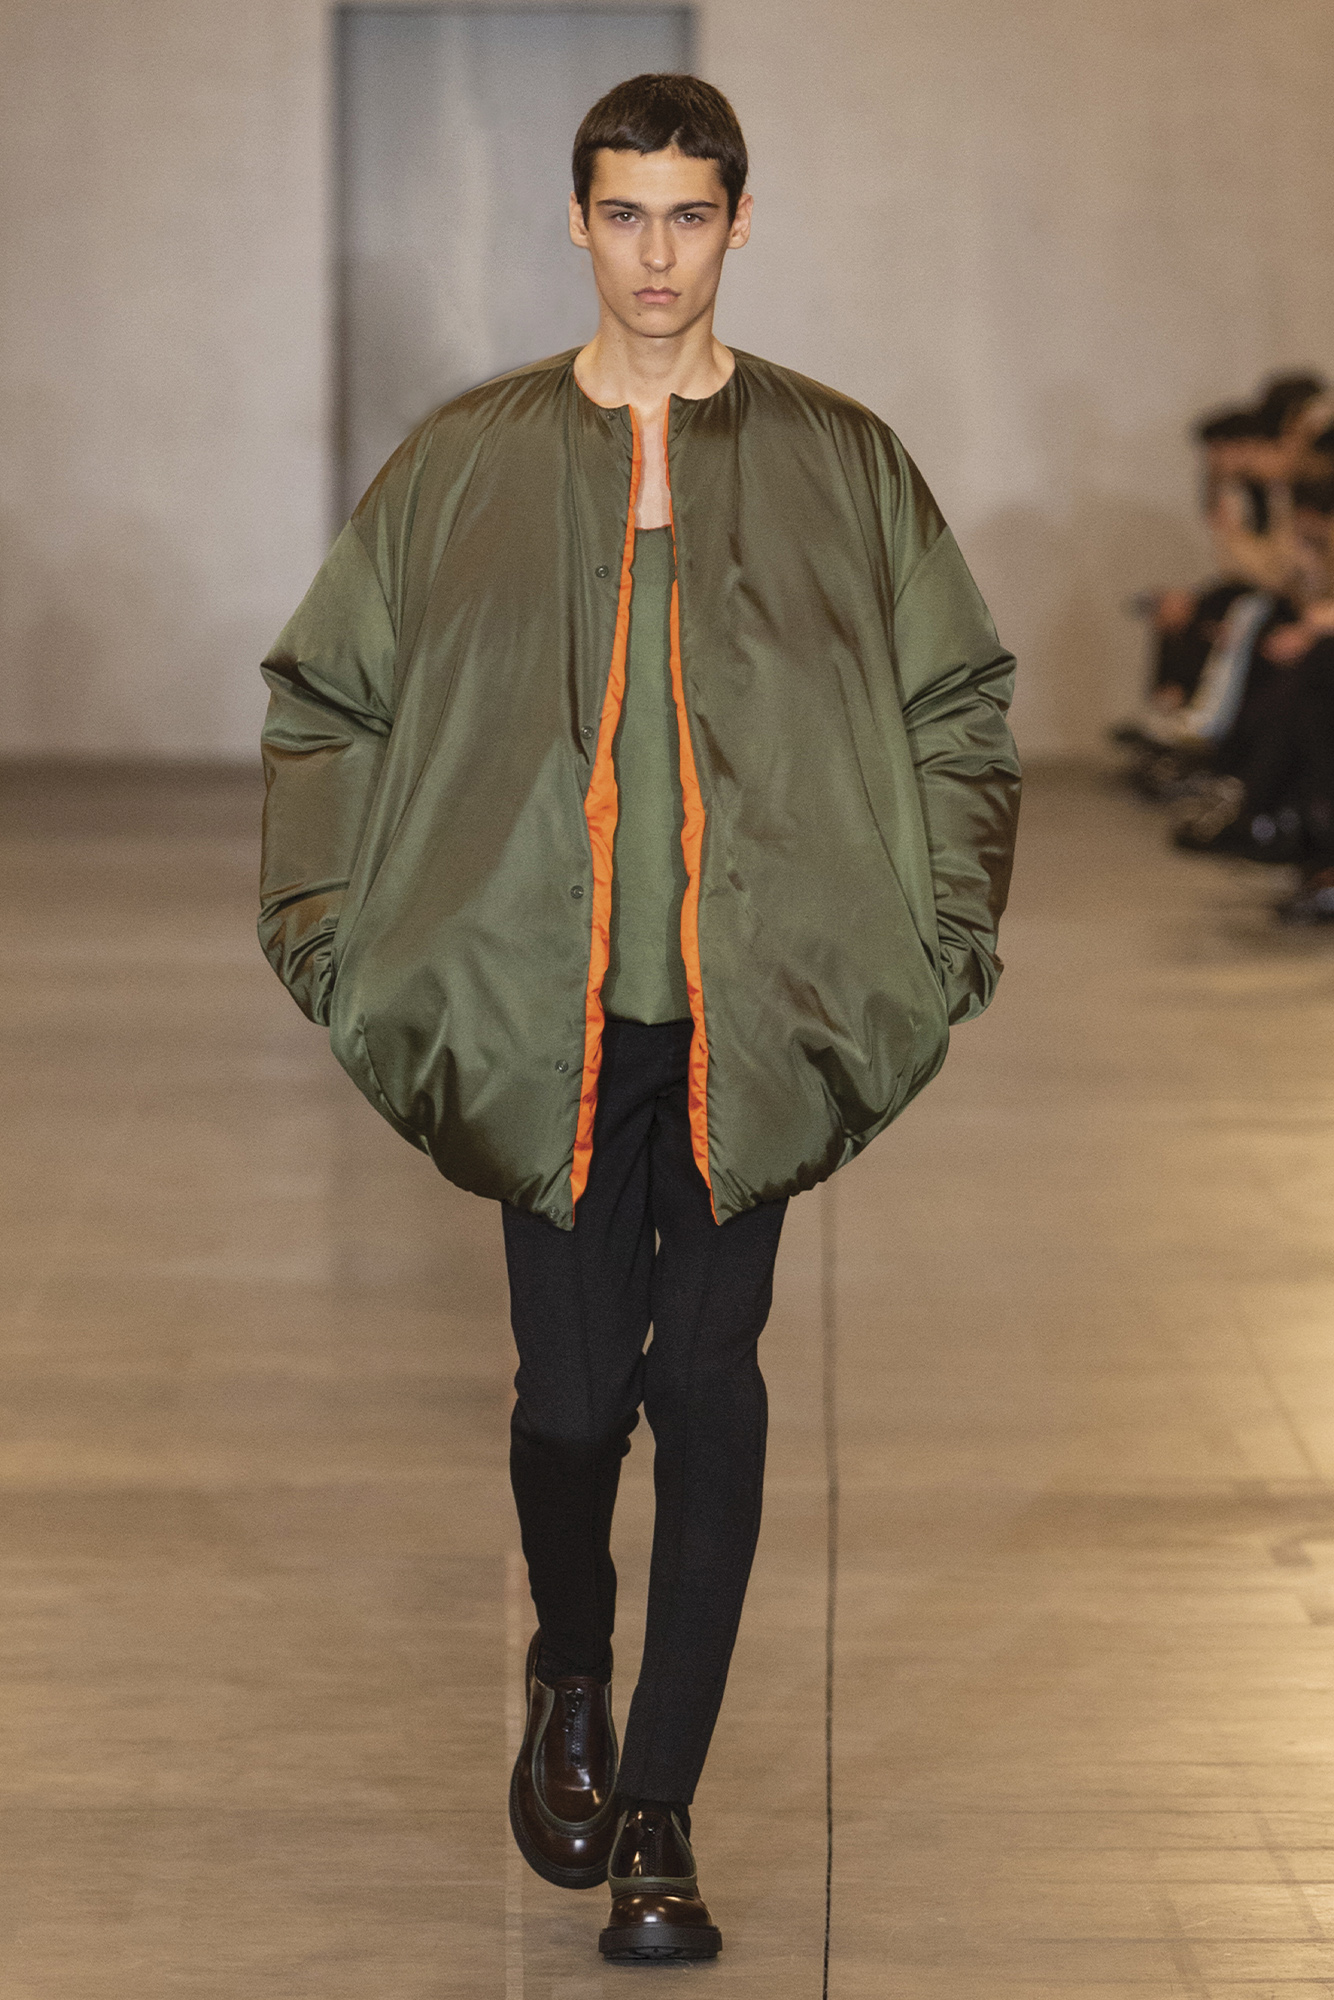 Prada duvet-like jacket in green on runway